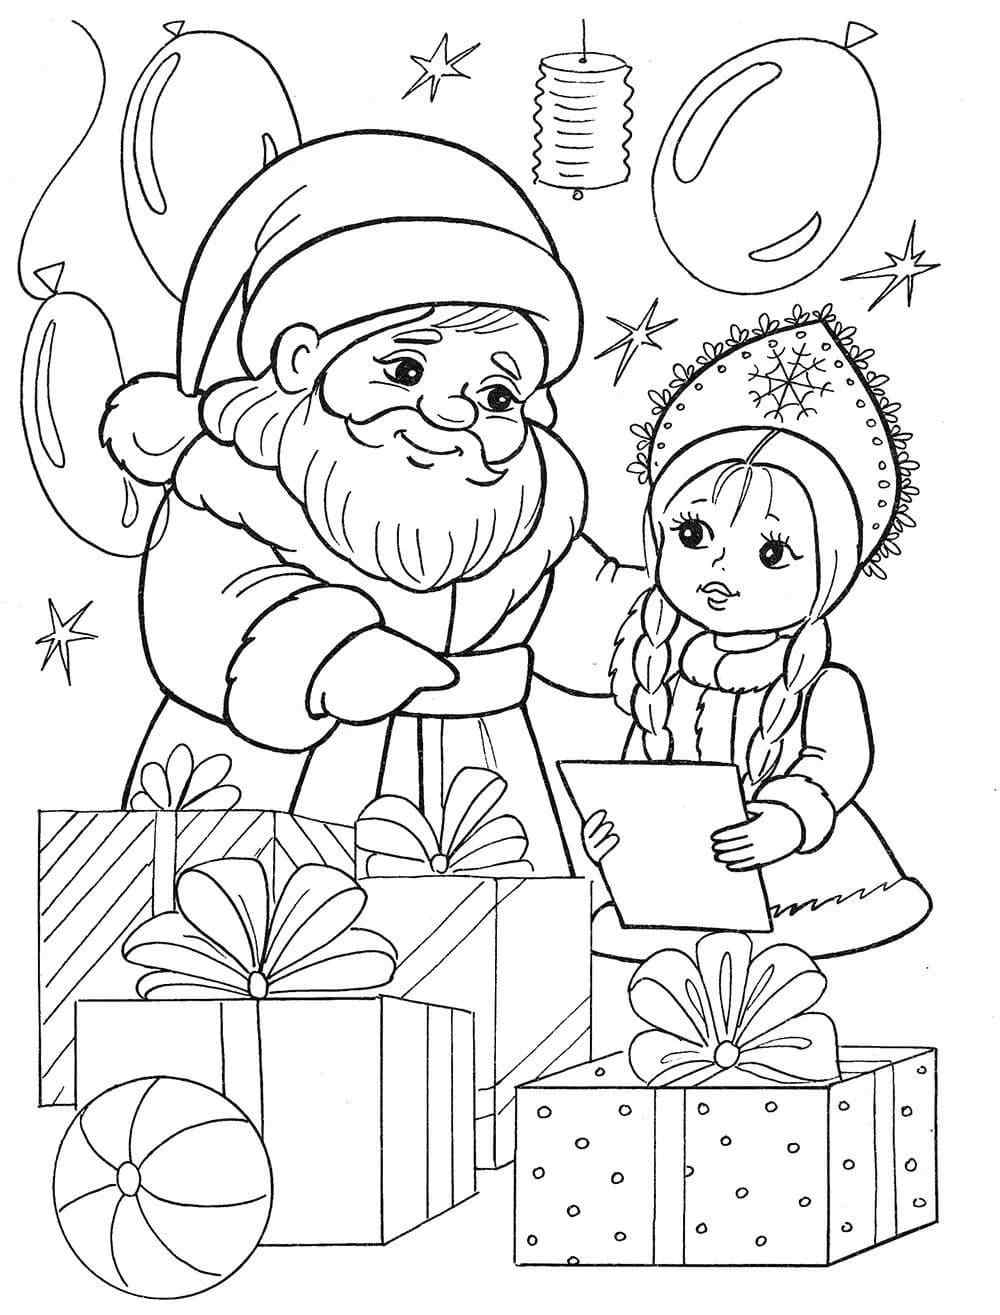 Snegurochka And Santa Claus